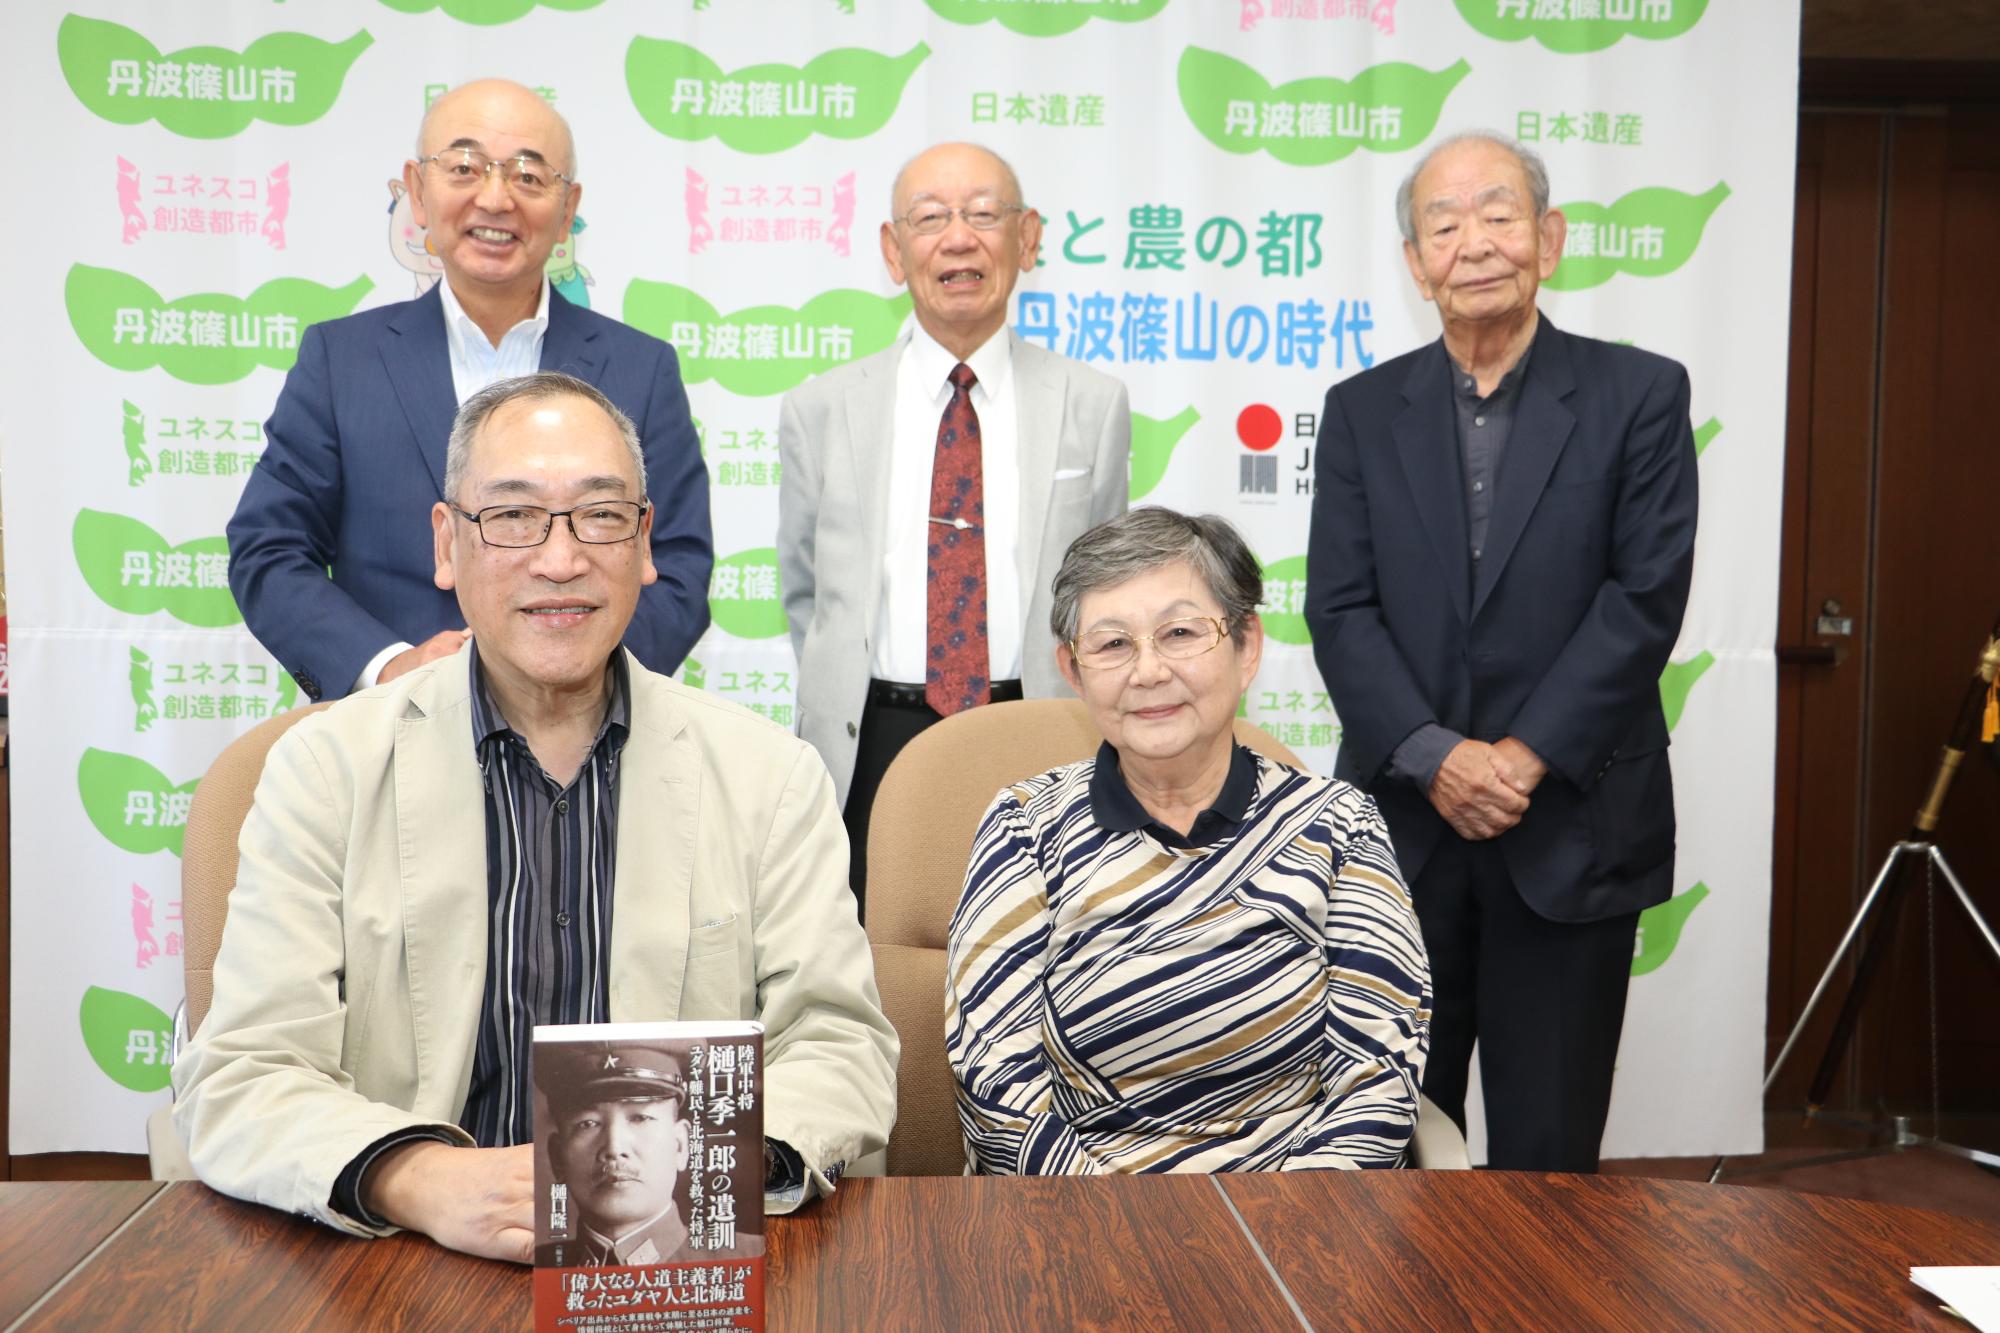 樋口夫妻が椅子に座られて、著書を手に持たれている。後方に、市長、小山さん、小林さんが並んで立っている。